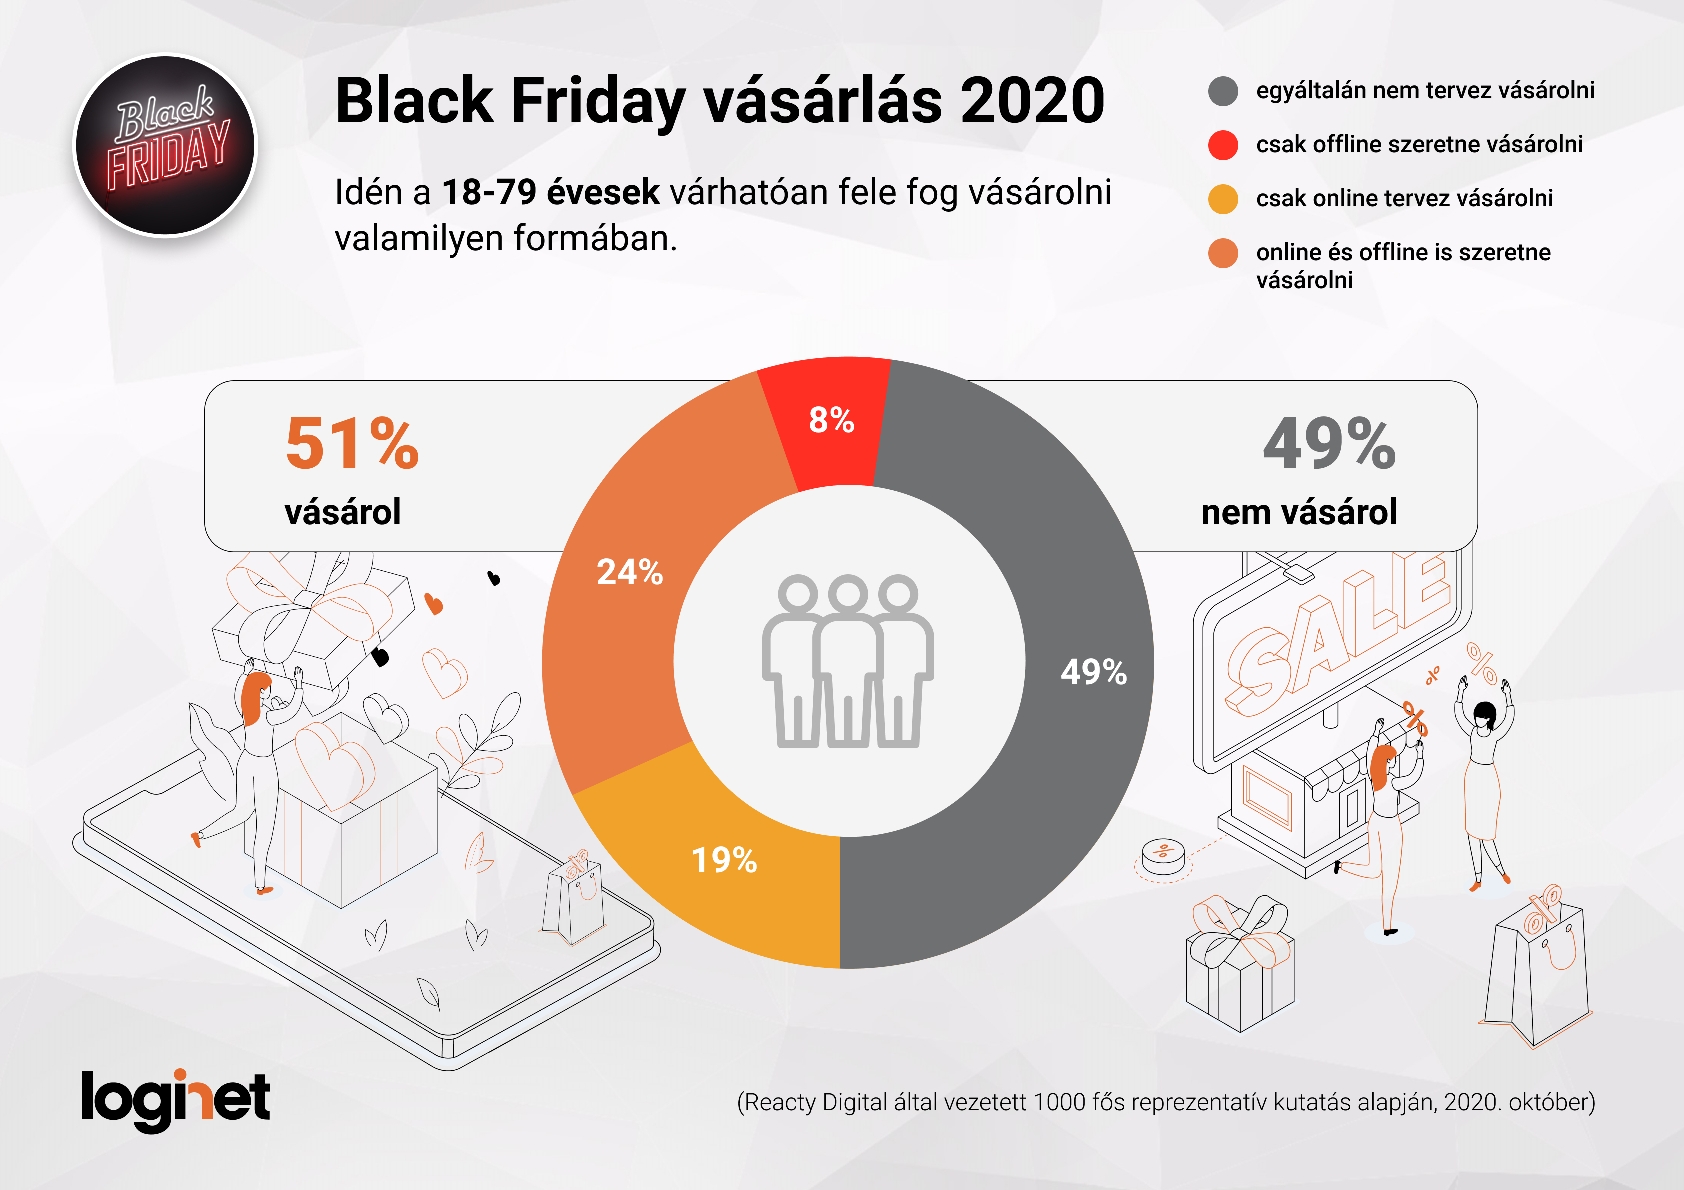 Black Friday 2020_Vásárlást tervezők_LogiNet, Reacty Digital kutatás